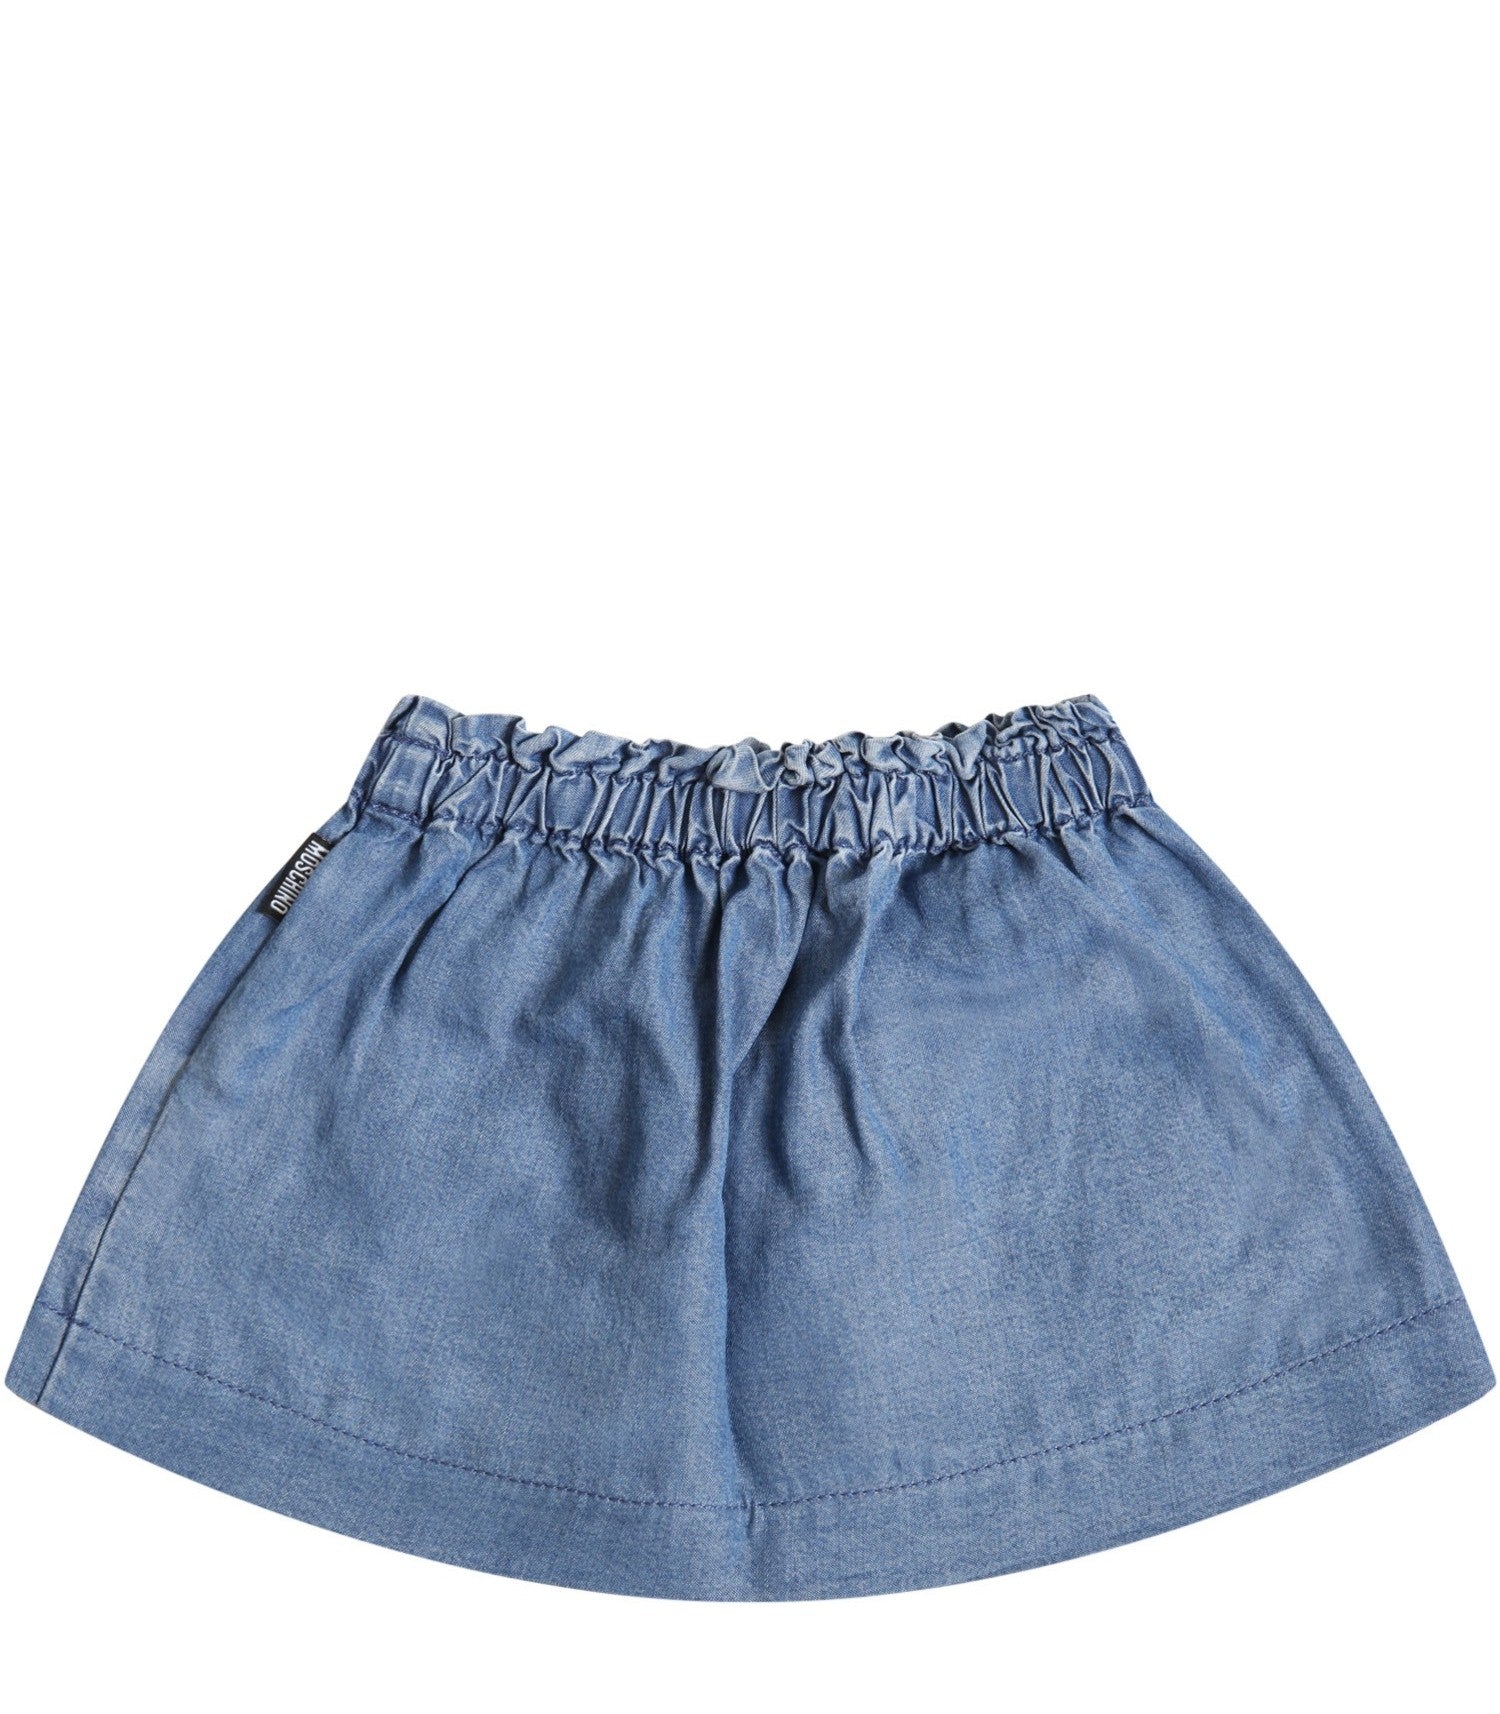 Baby Girls Blue Skirt